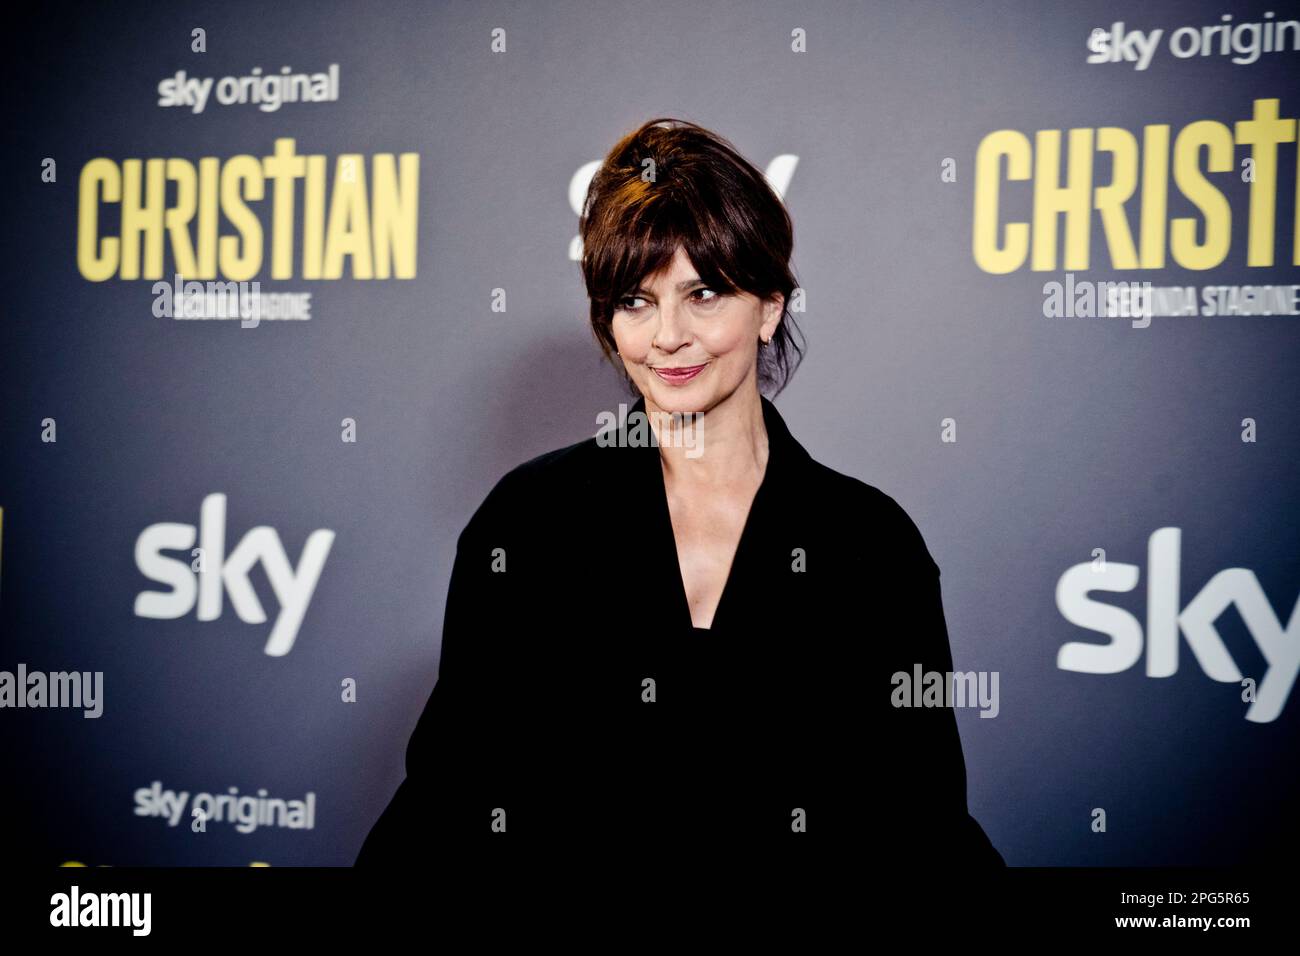 Rome, Italy, 20th March 2023, Laura Morante attends the premiere of 'Christian - seconda stagione' at Cinema Barberini (Photo credits: Giovanna Onofri Stock Photo